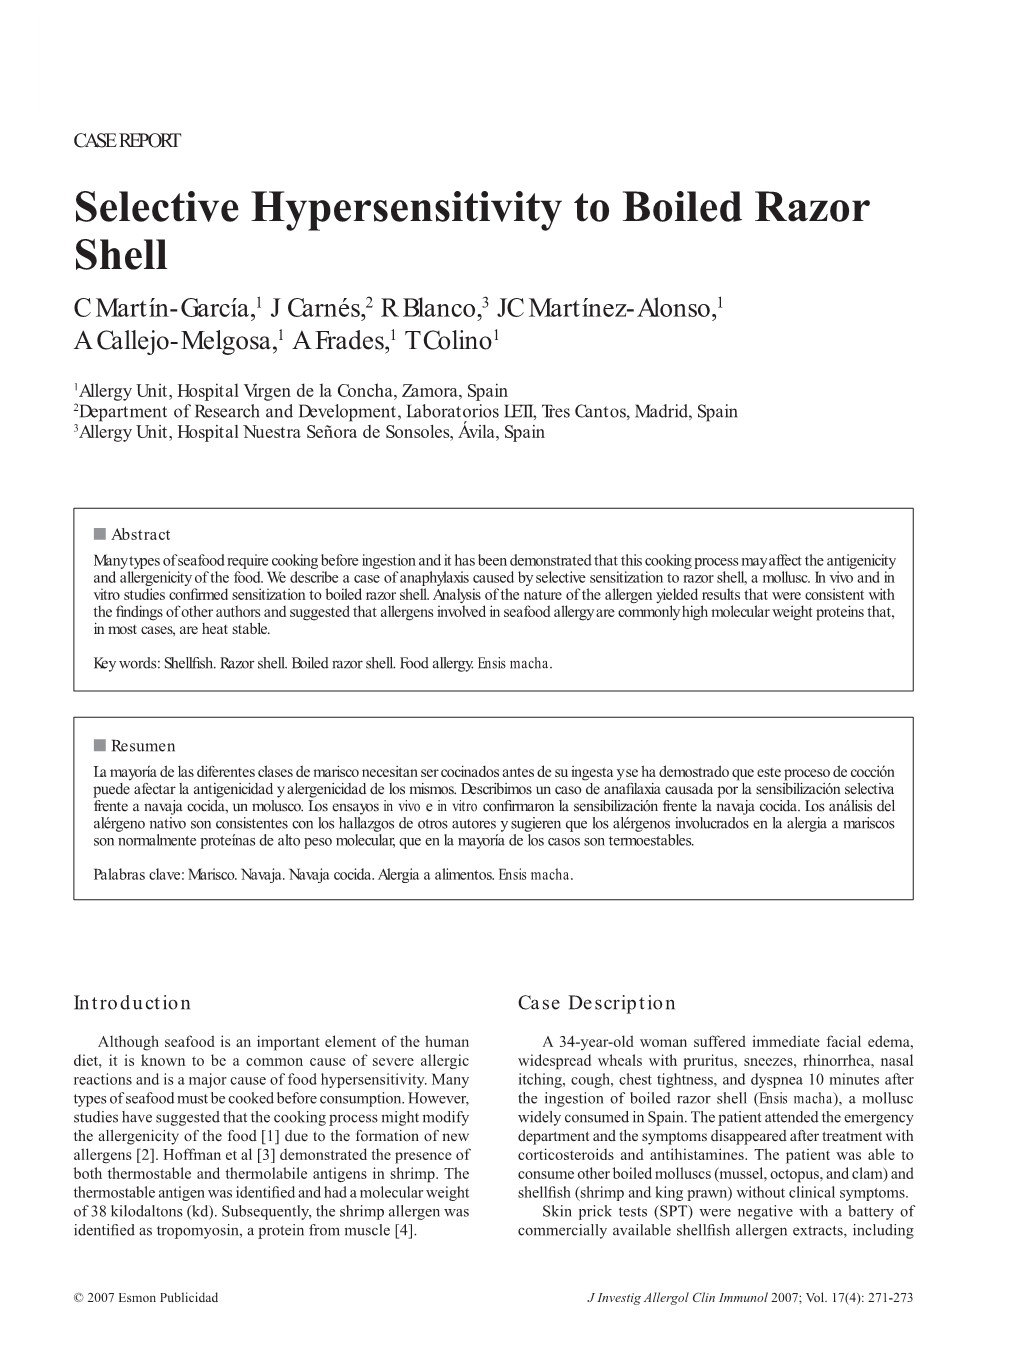 Selective Hypersensitivity to Boiled Razor Shell C Martín-García,1 J Carnés,2 R Blanco,3 JC Martínez-Alonso,1 a Callejo-Melgosa,1 a Frades,1 T Colino1